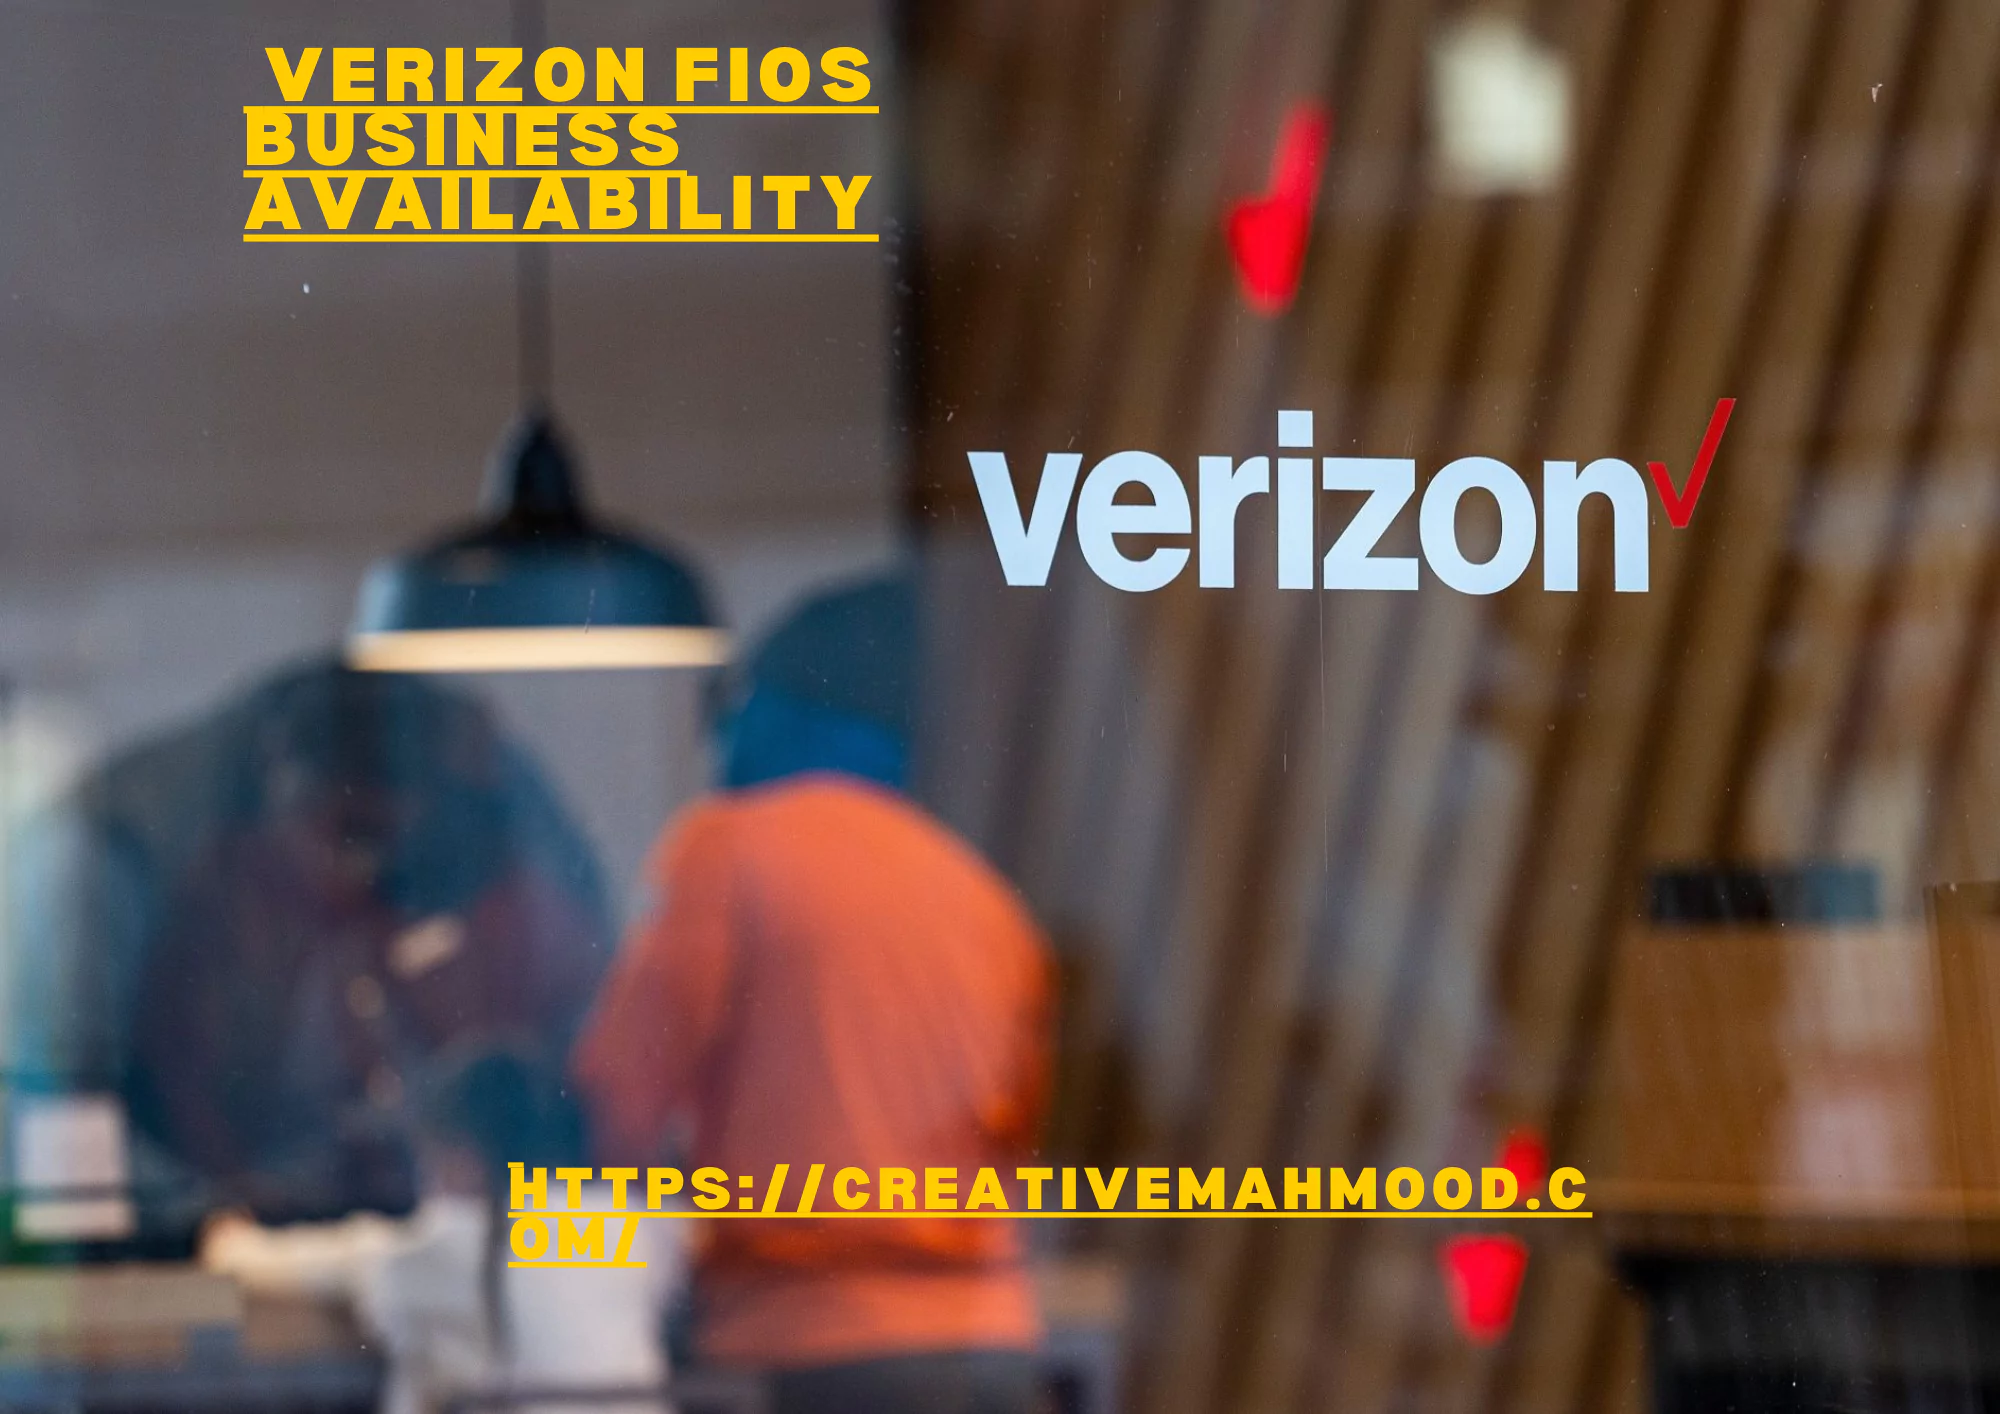 Verizon Fios business availability